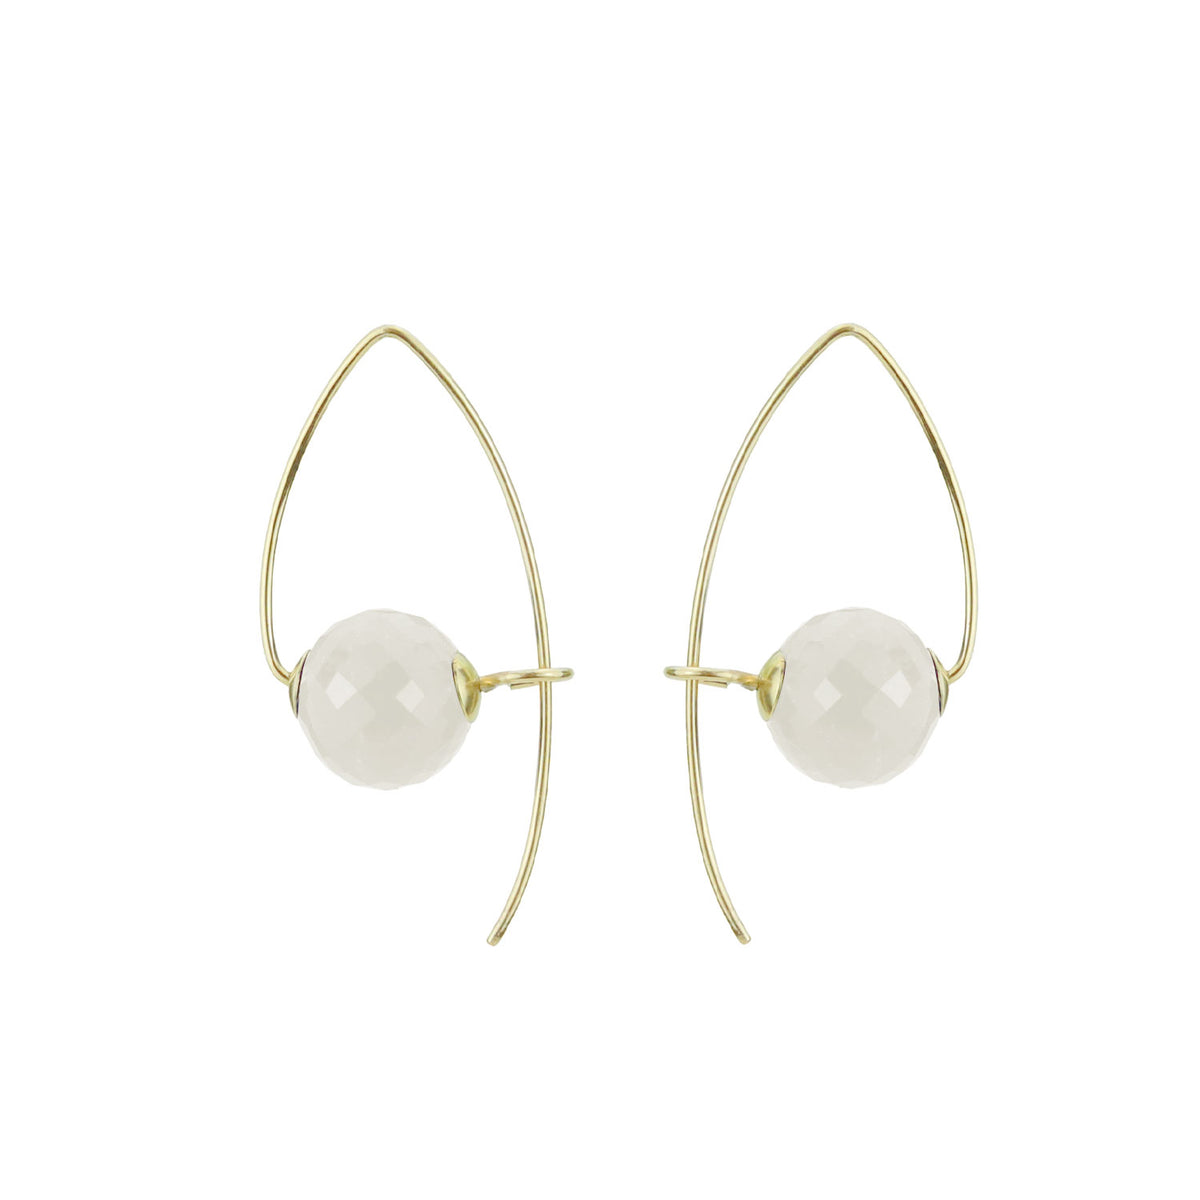 Modern Faceted Gemstone Sphere Earrings